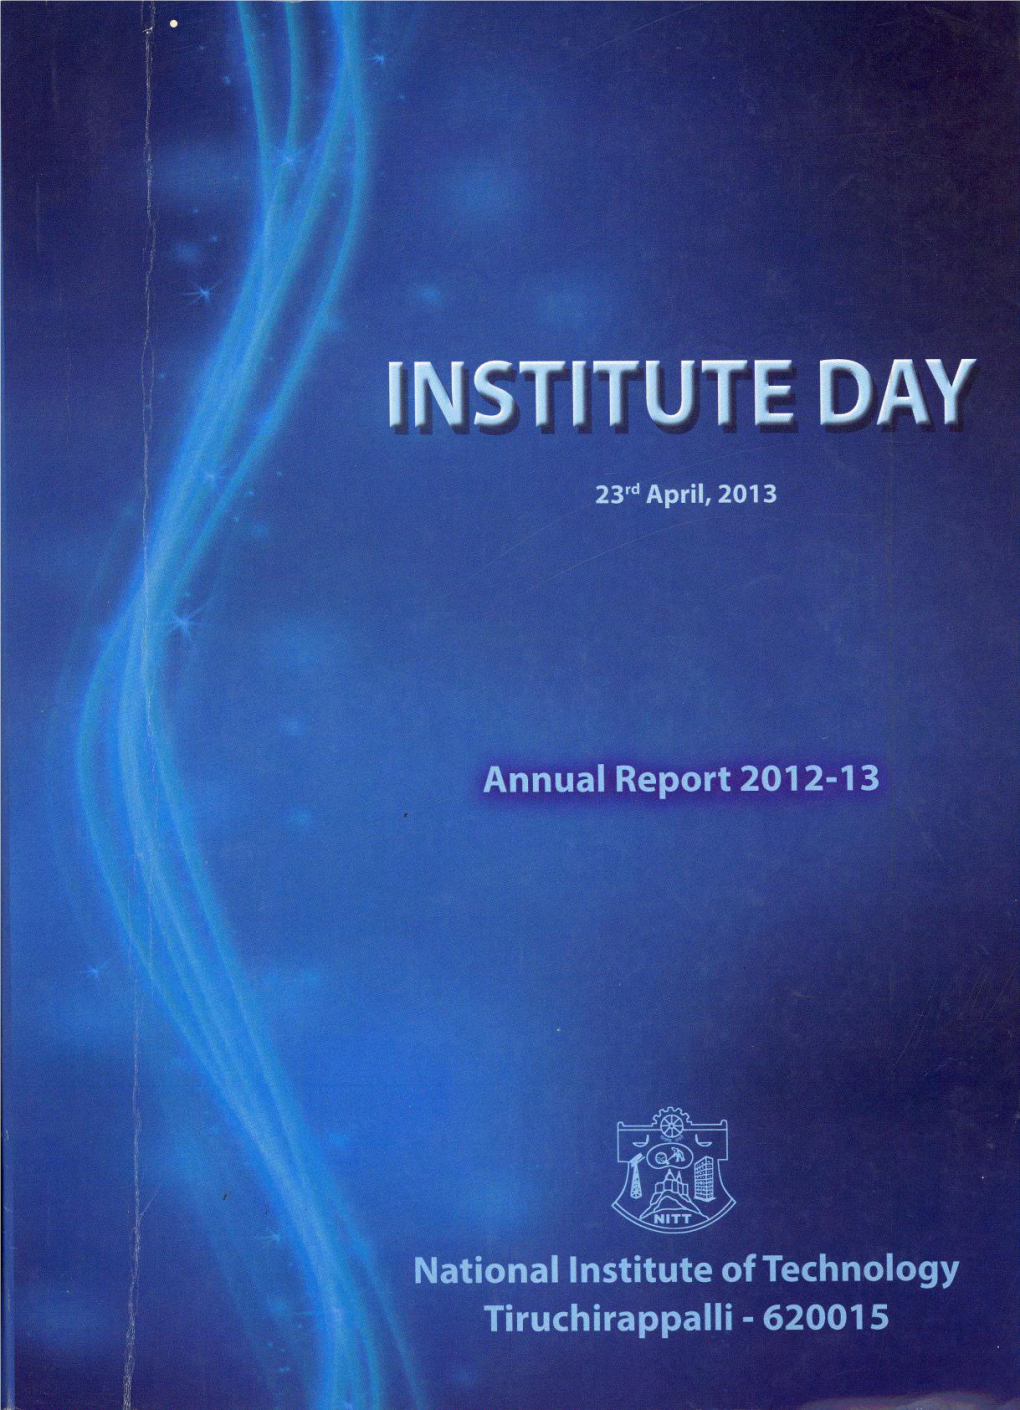 Institute Day 2013